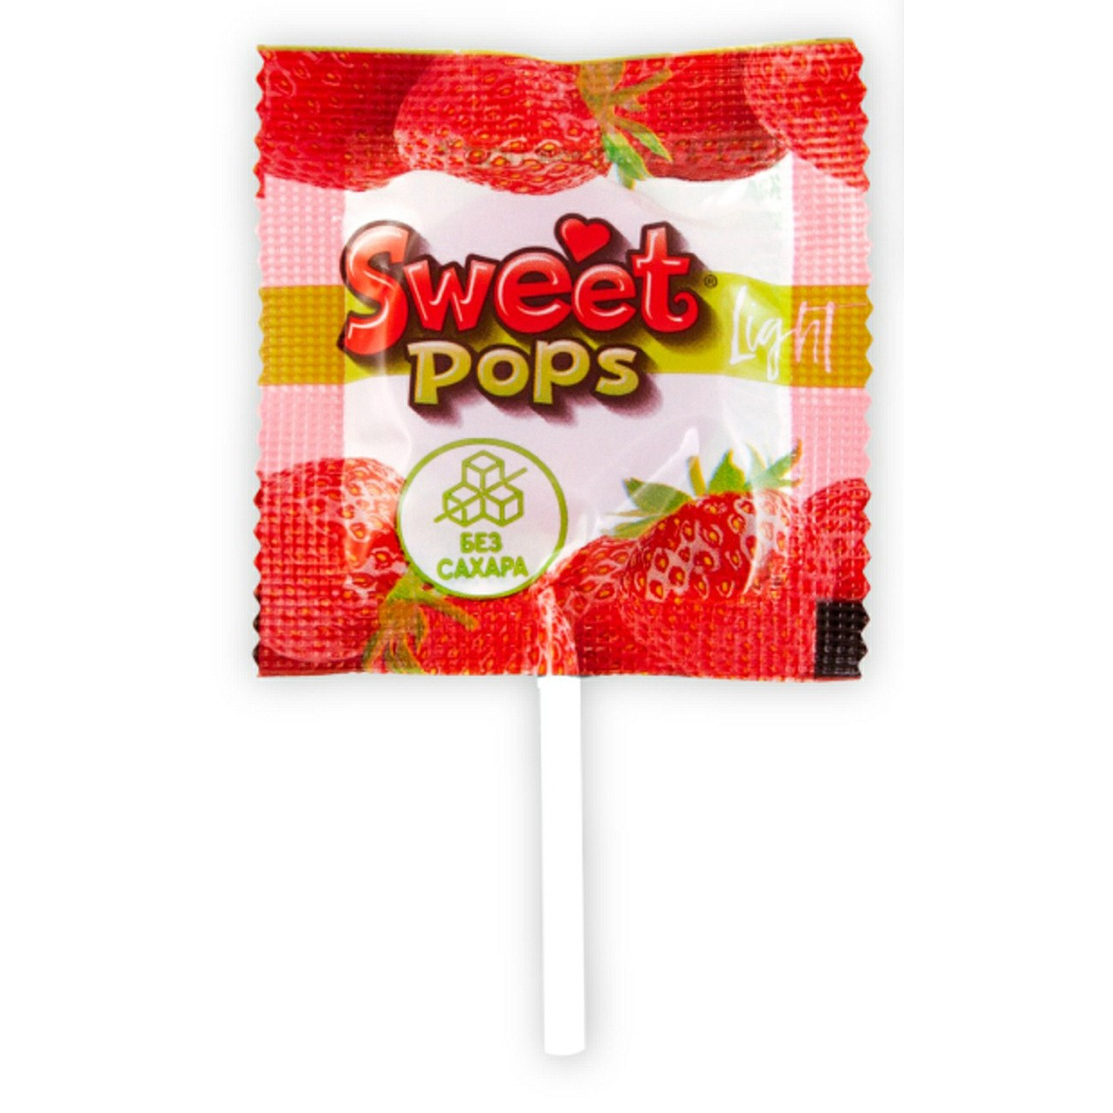 Карамель Sweet pops light без сахара 10 г в ассортименте карамель ротфронт леденцовая барбарис 250 гр